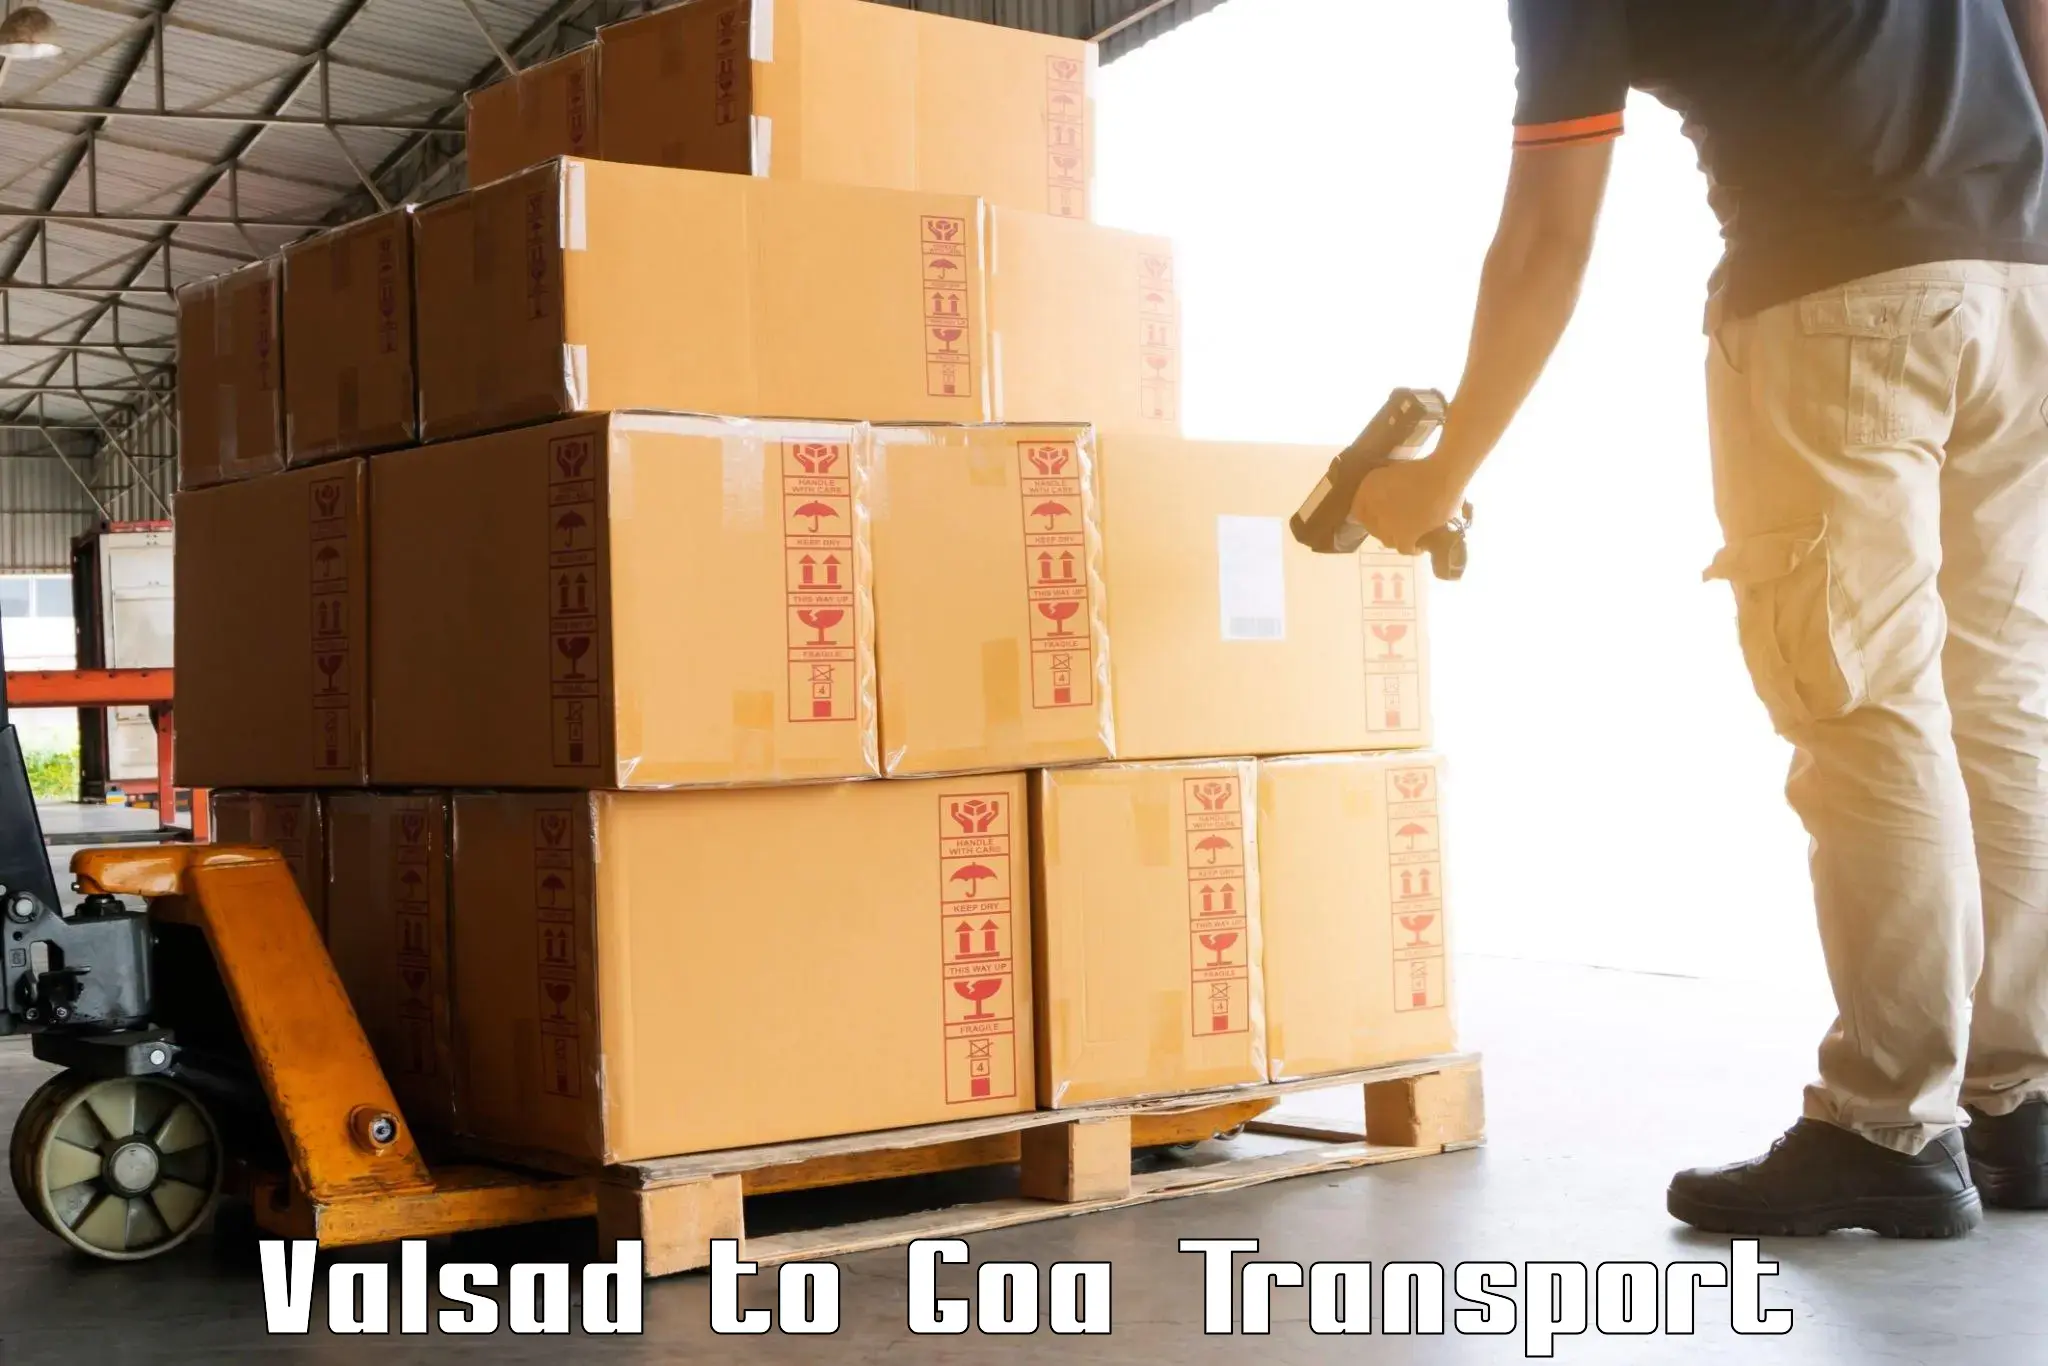 Cargo transport services Valsad to Mormugao Port